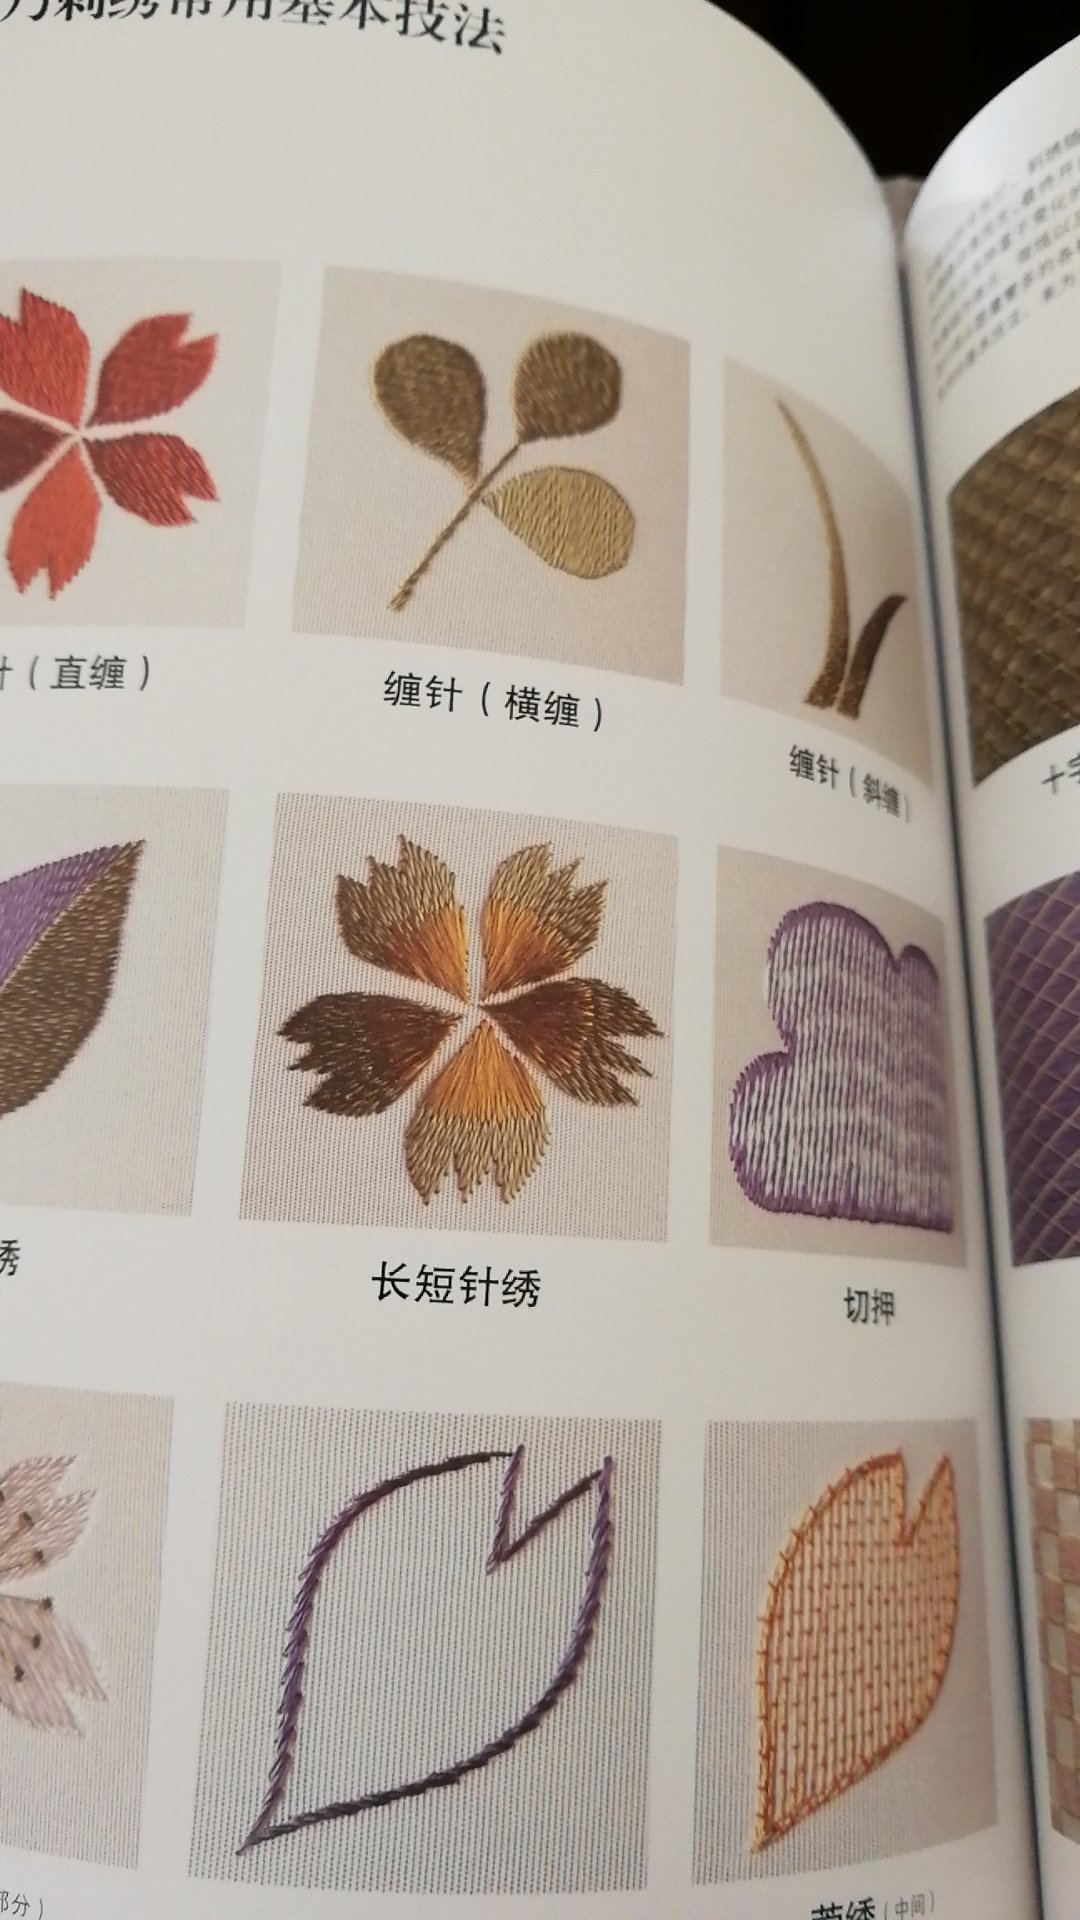 图印得非常清晰，日本绣法很华丽平整，所以慢慢学习吧！